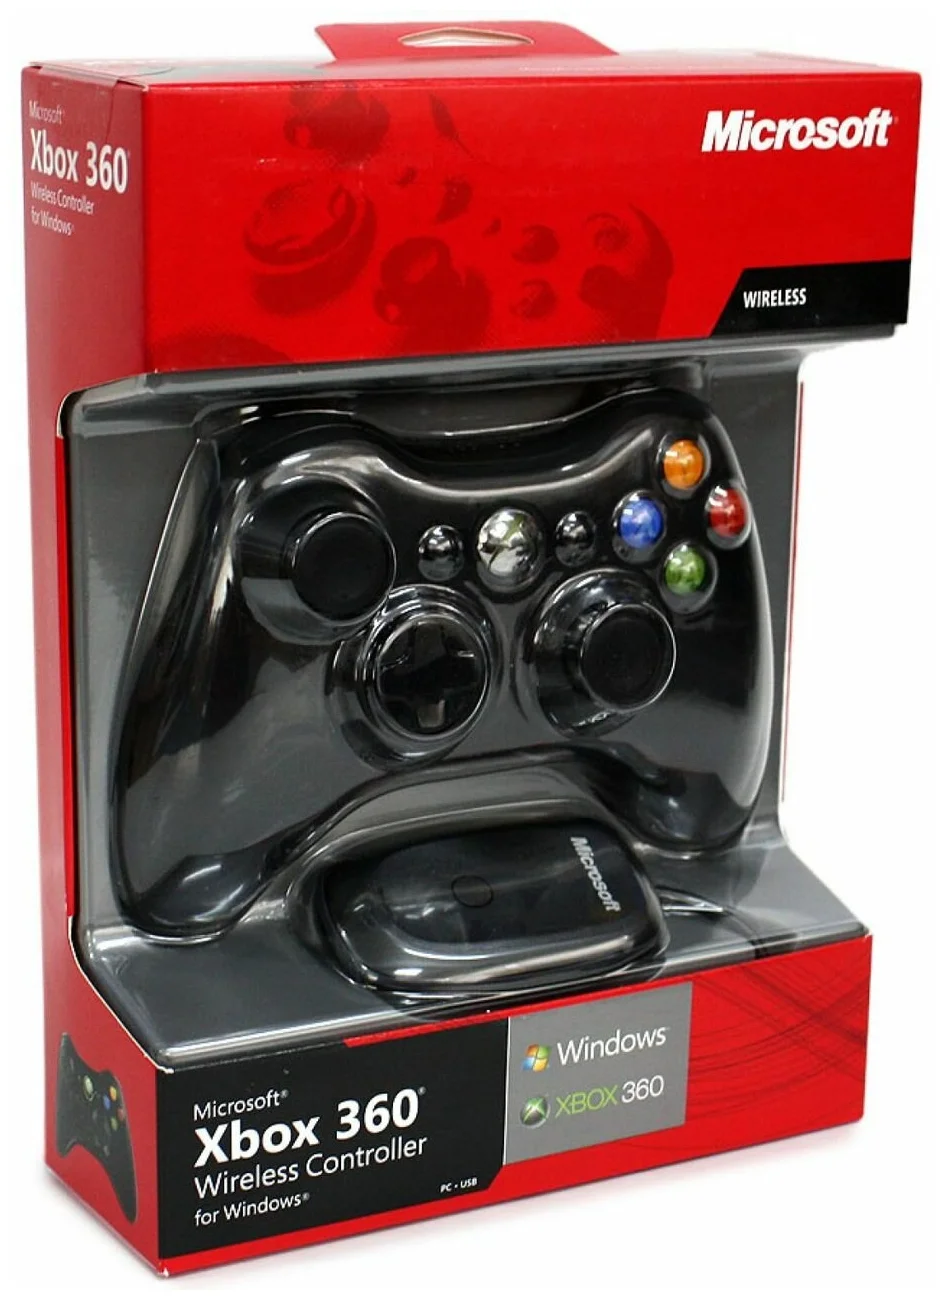 Microsoft Xbox 360 Wireless Controller for Windows - виброотдача: да